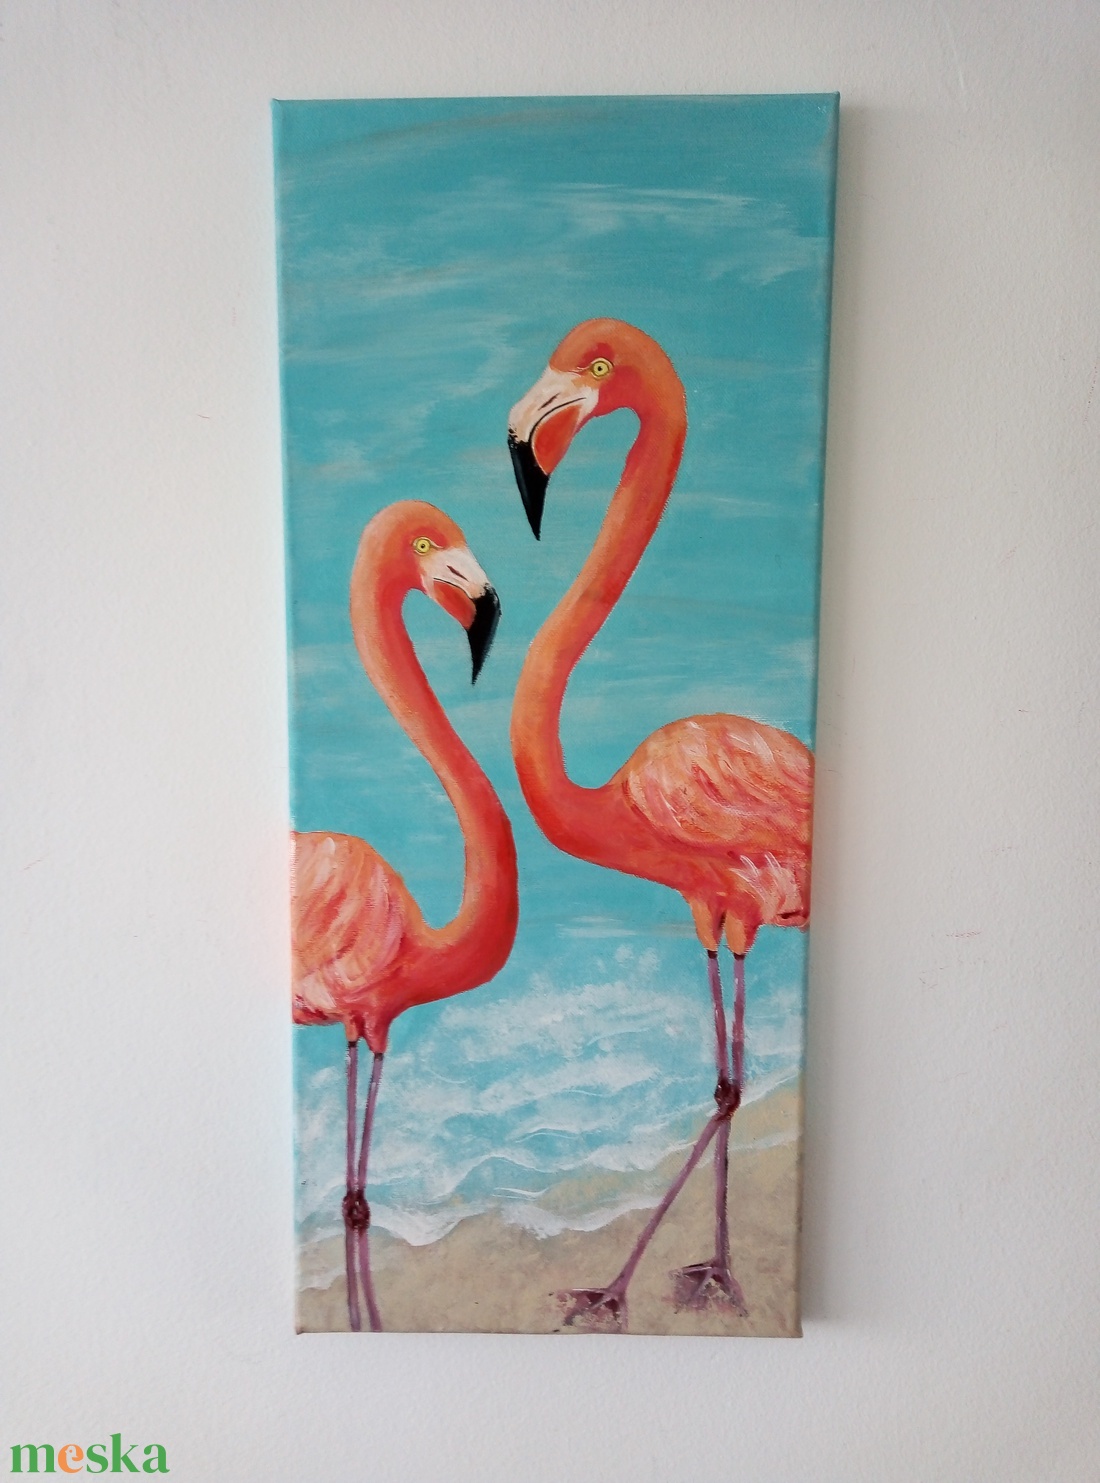 Flamingó festmény - művészet - festmény - akril - Meska.hu